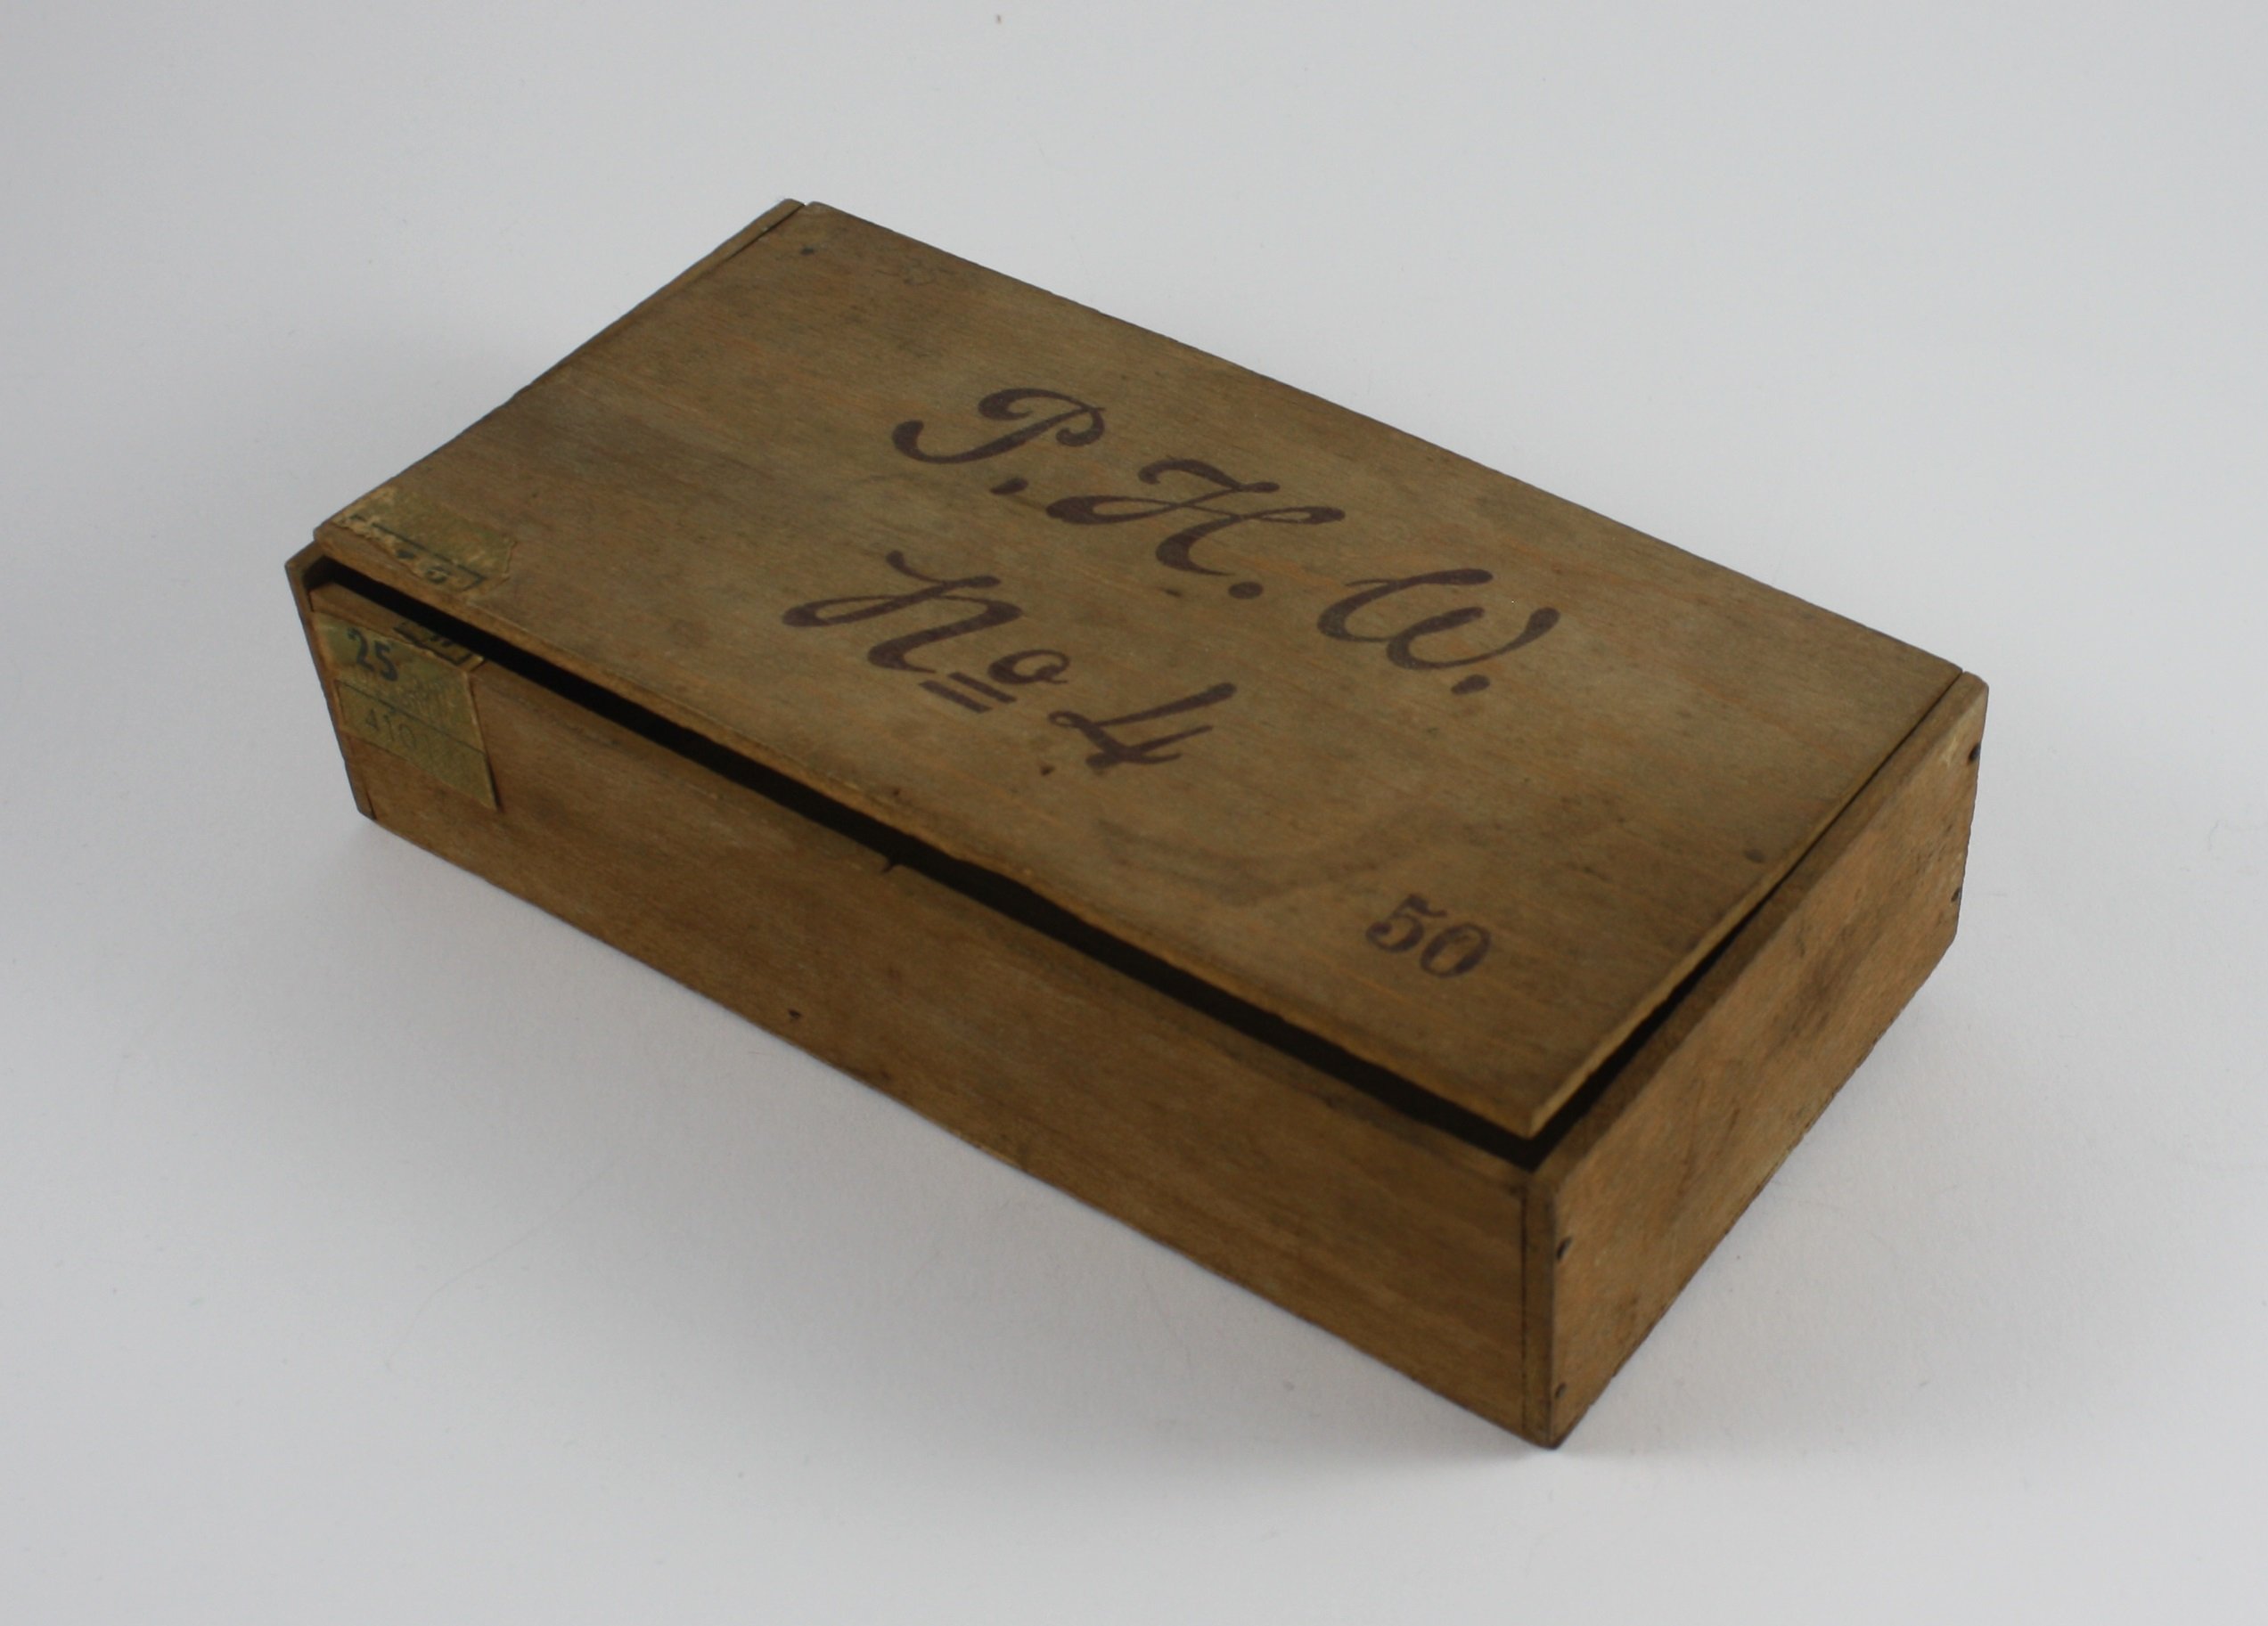 Zigarrenkiste "P.H.W" (LWL-Psychiatriemuseum Warstein CC BY-NC-SA)